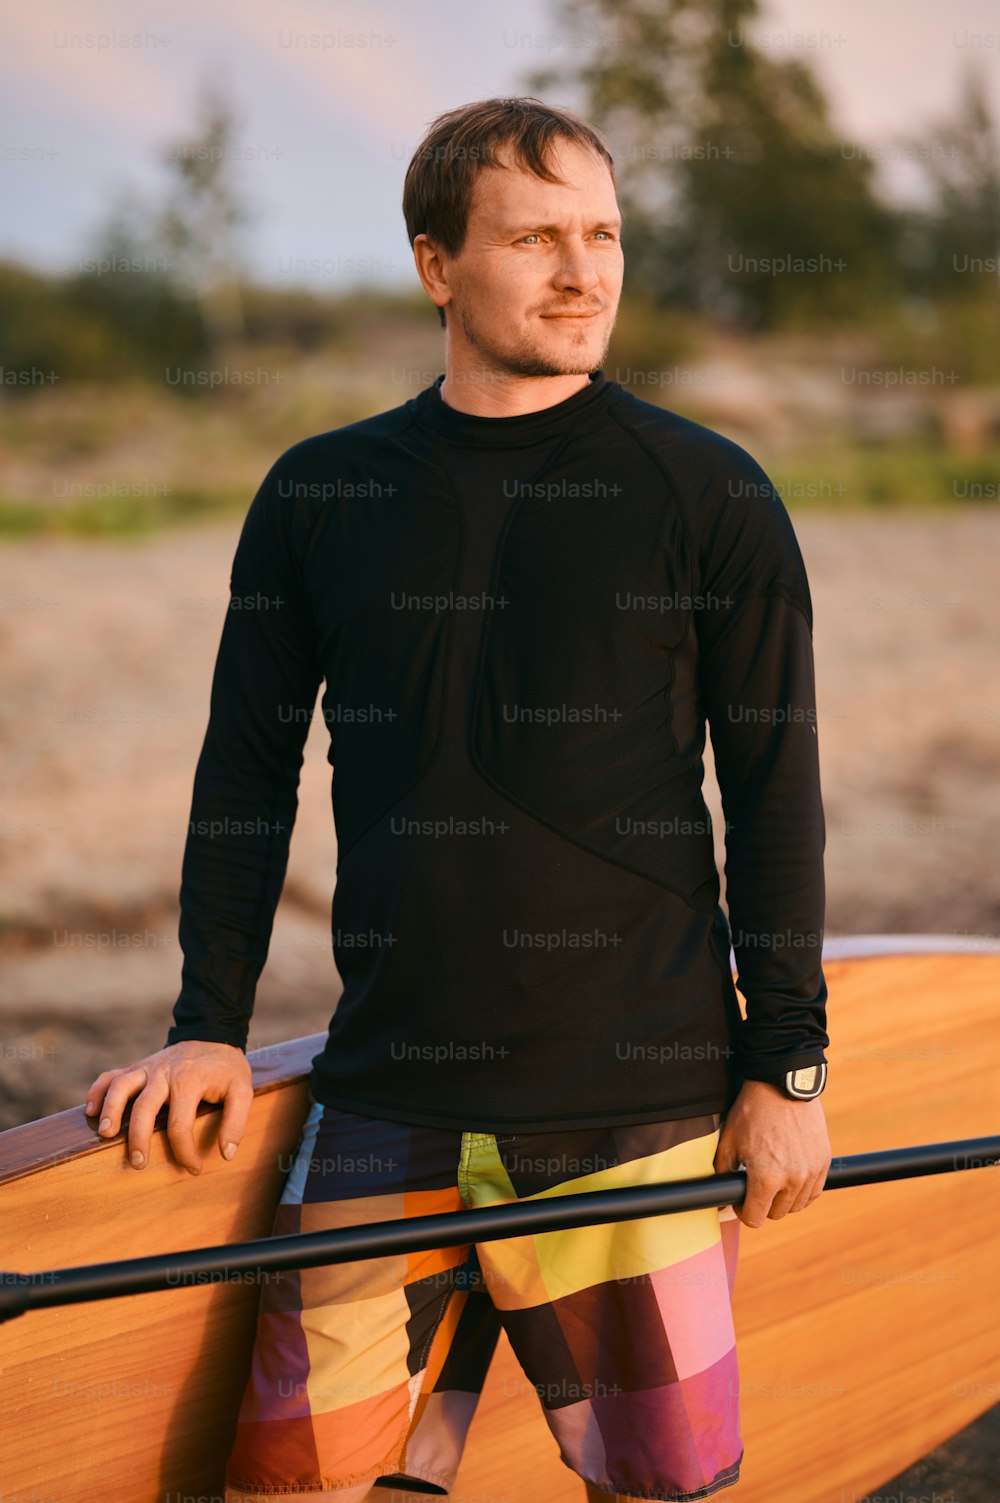 Ritratto di uomo forte in camicia bagnata in posa con tavola da surf sup e pagaia sulla riva del lago dopo aver pagaiato attivo sull'acqua, distogliendo lo sguardo dalla macchina fotografica